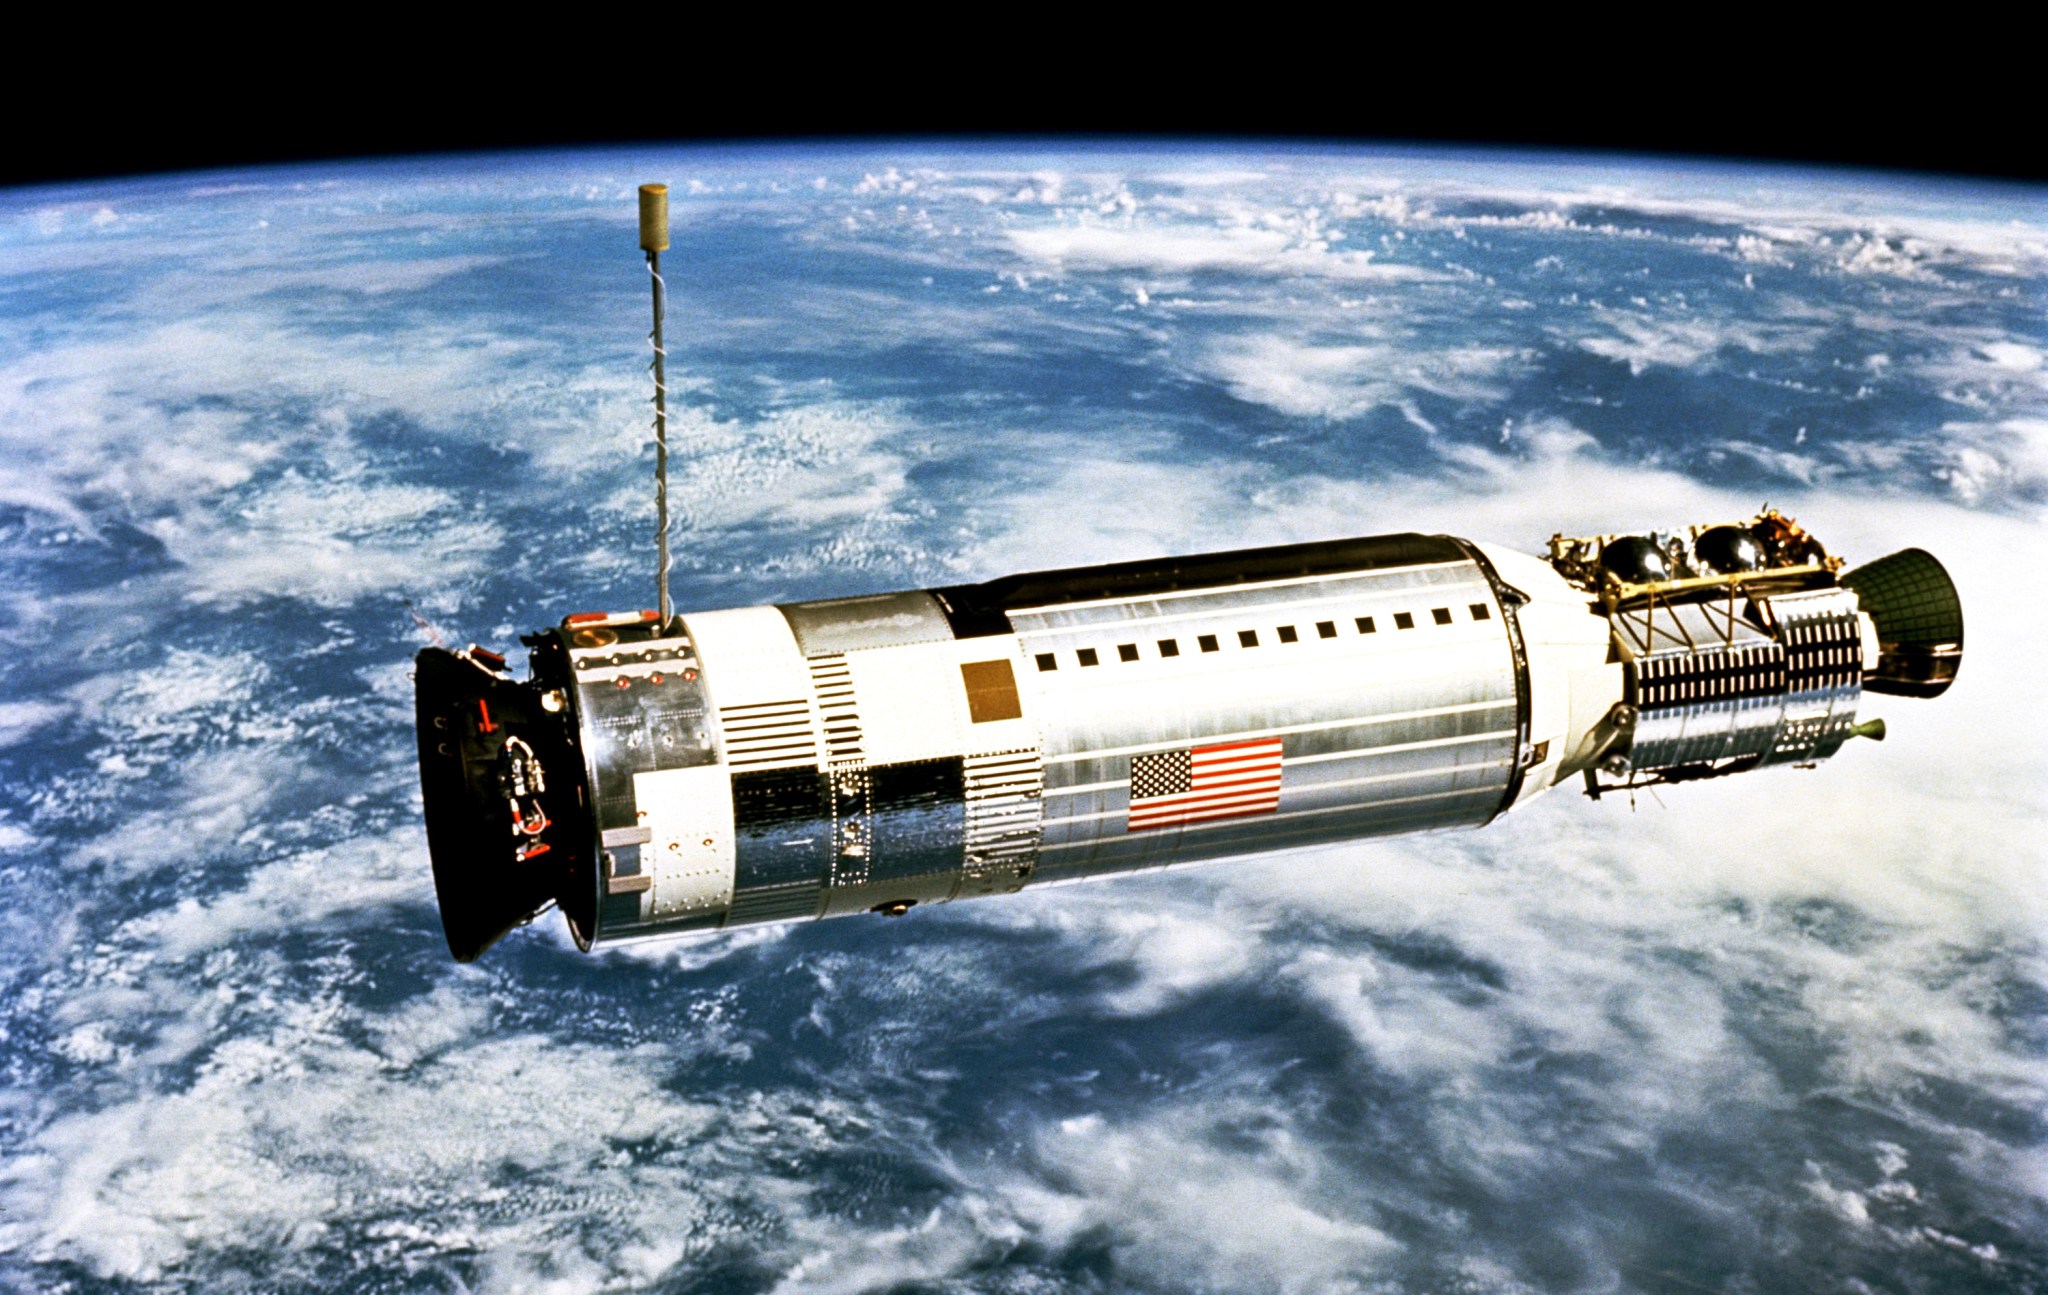 Gemini XII’s Agena target docking vehicle